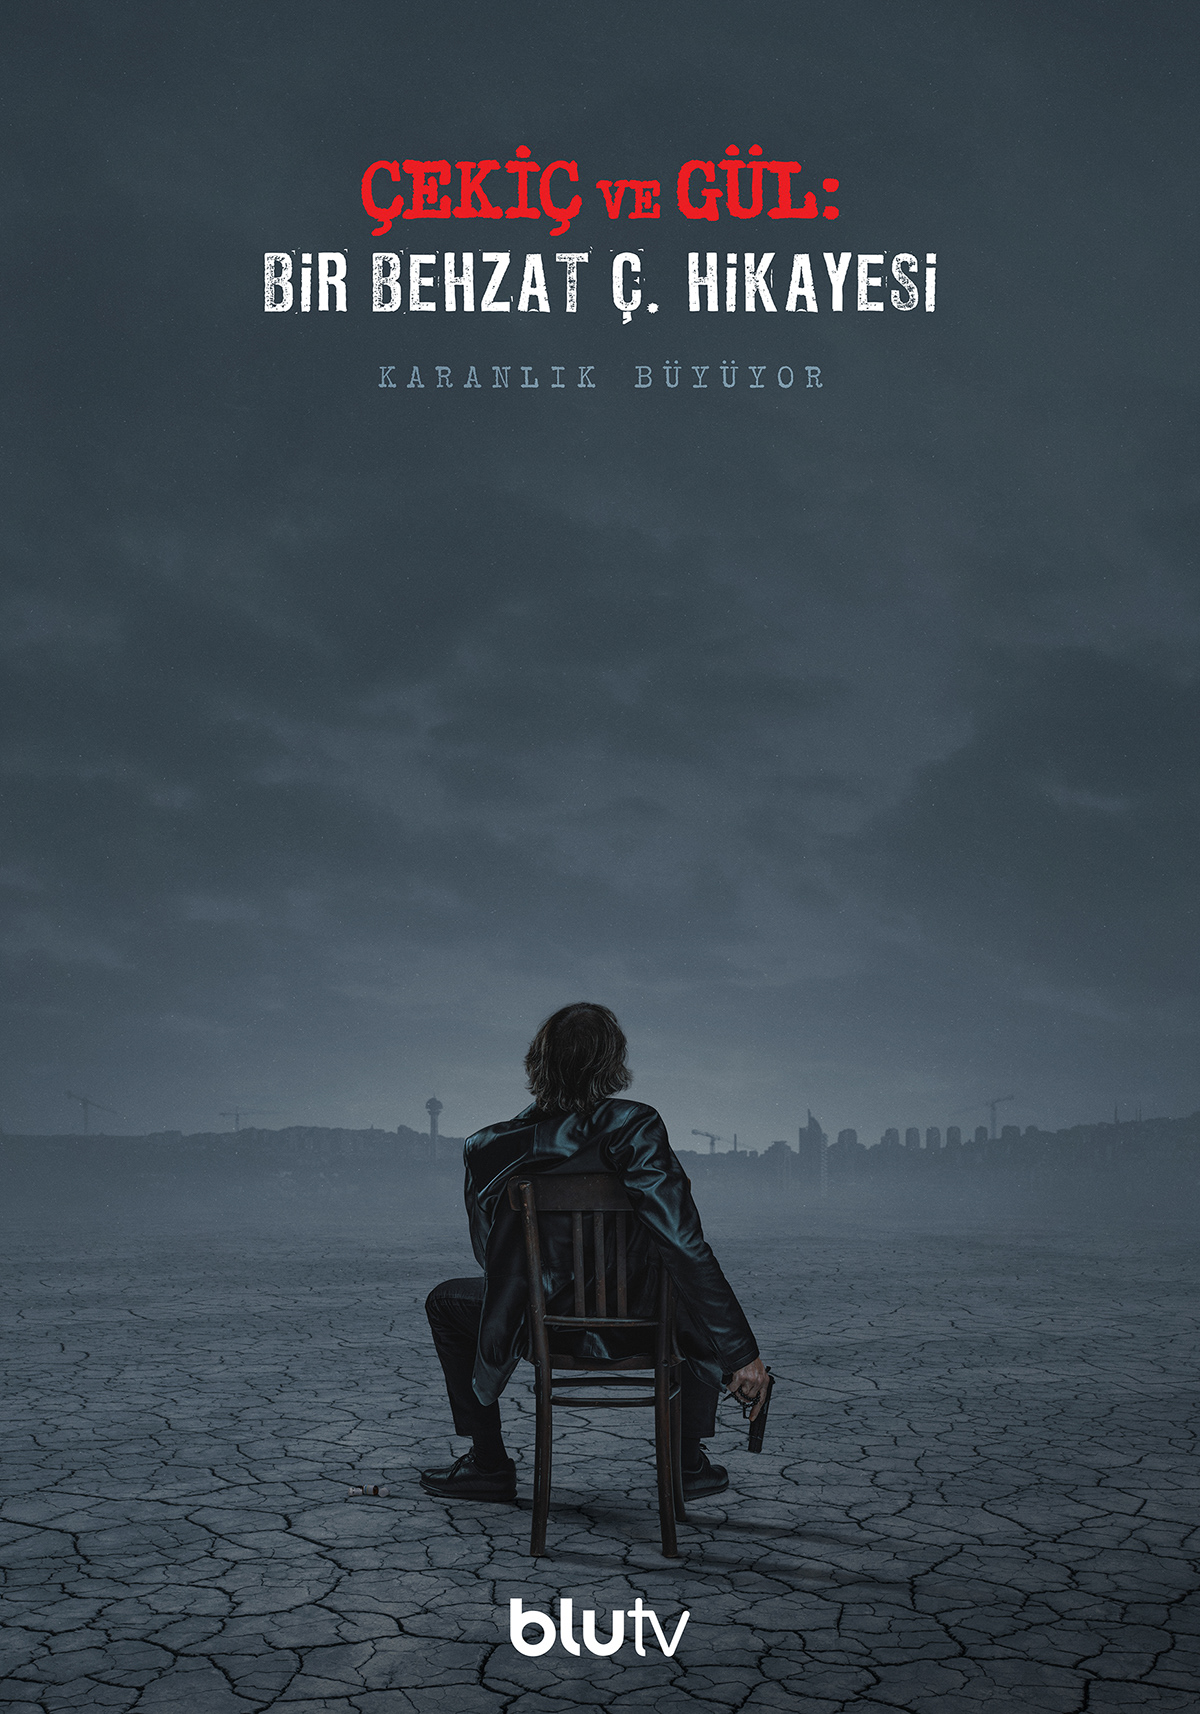 Behzat Ç berkcan okar blutv çekiç ve gül erdal beşikçioğlu key art poster tv series yer creative